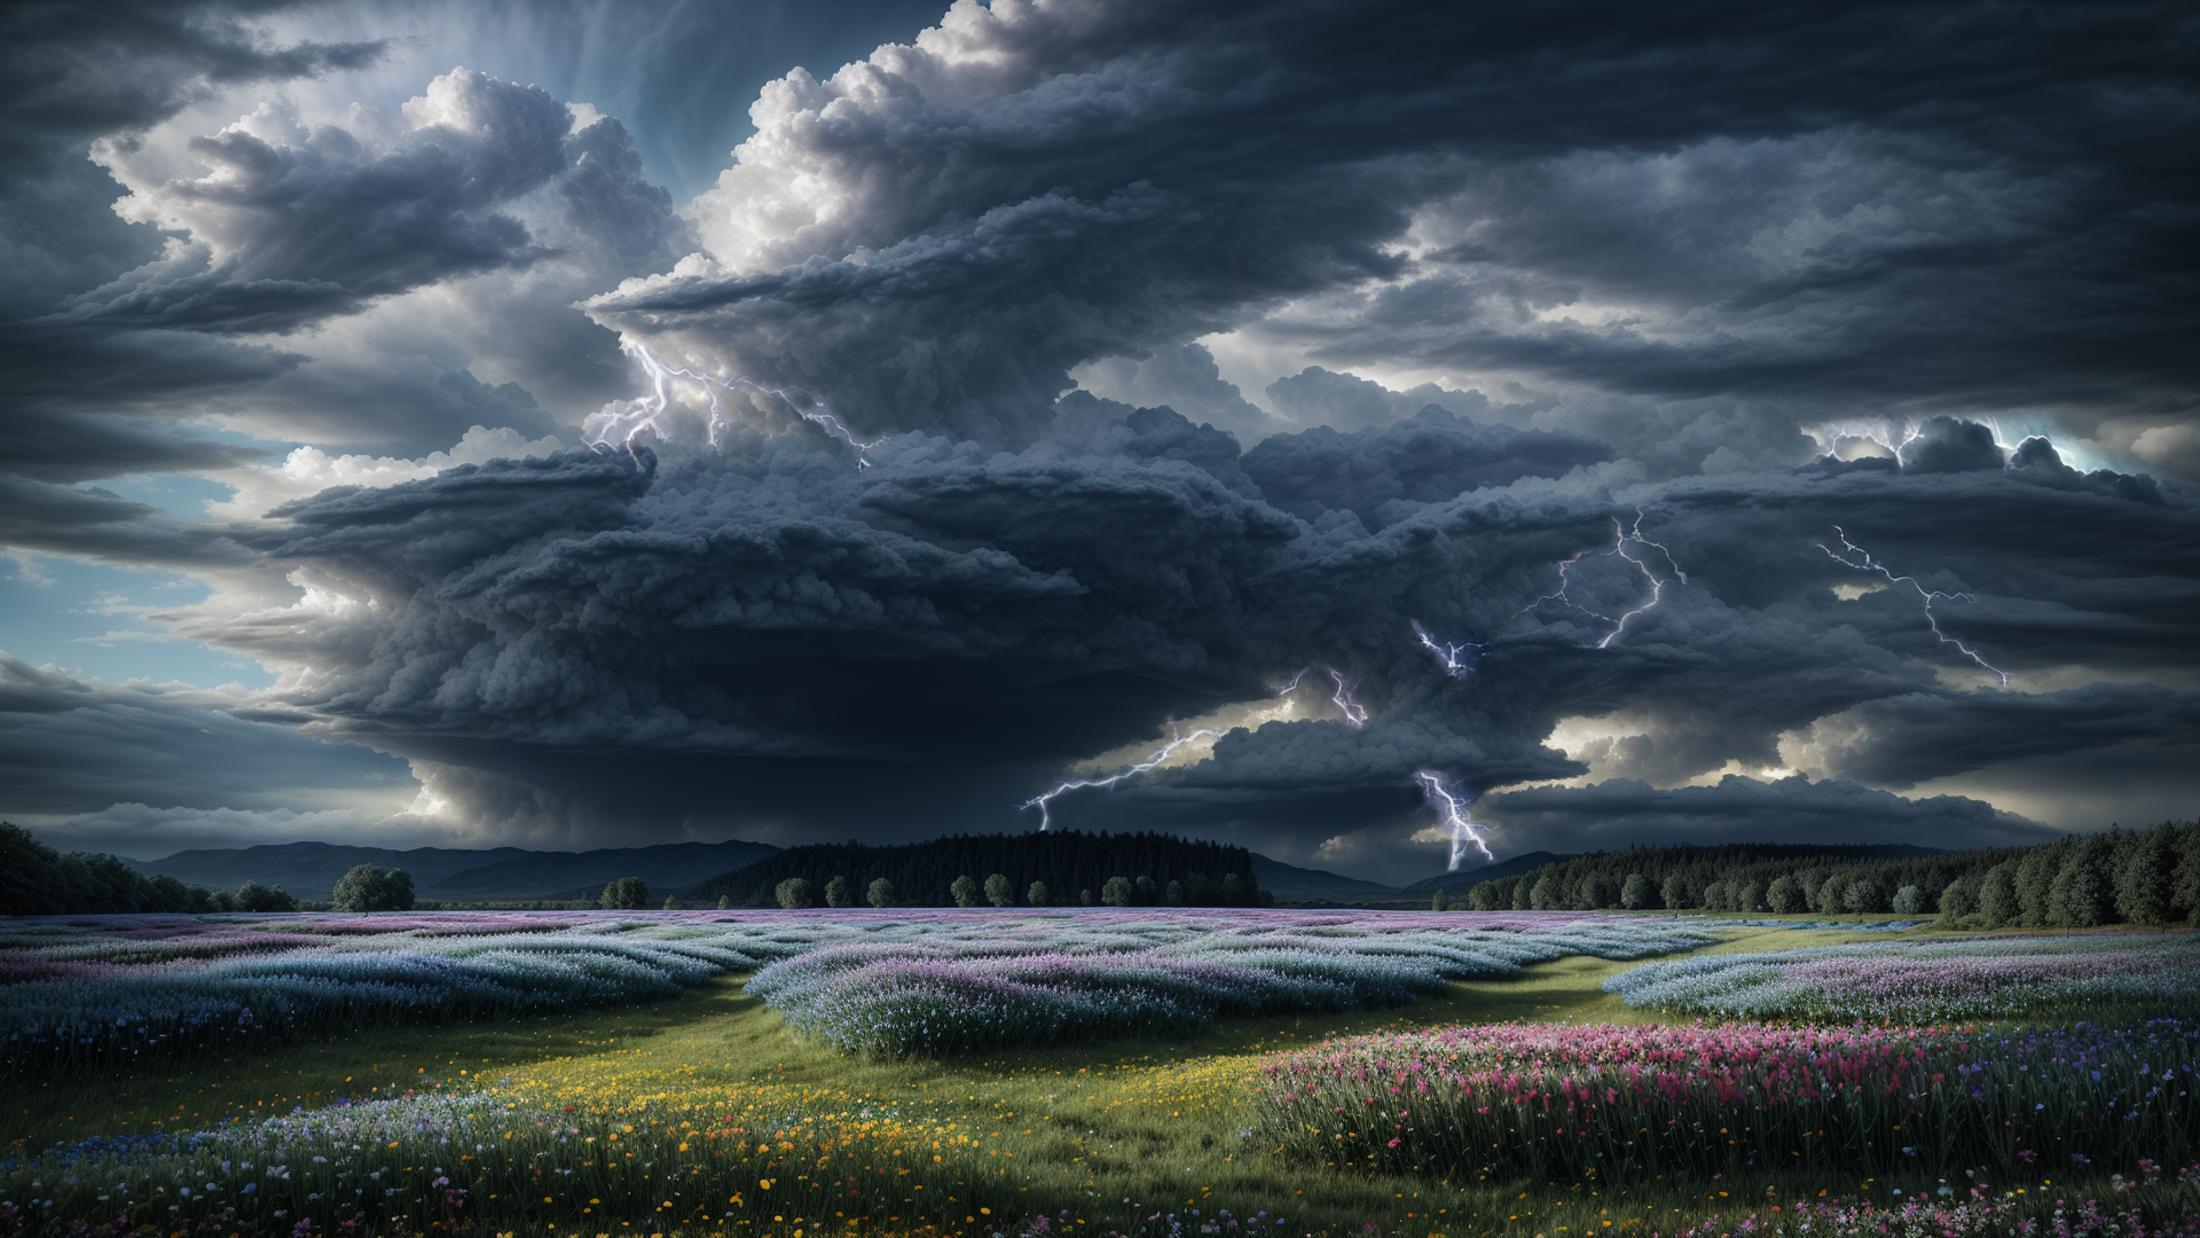 Lightning and Thunder 〘Style LoRA〙 image by Don_Gachi